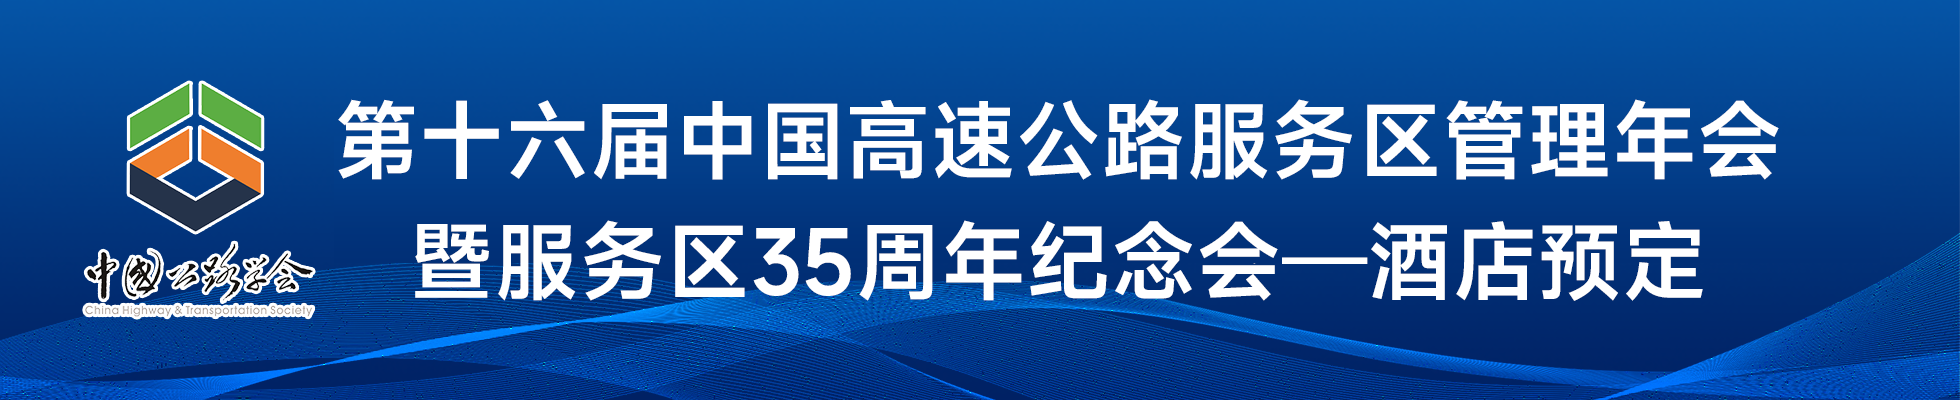 第十六届中国高速公路服务区管理年会暨服务区35周年纪念会-酒店预订